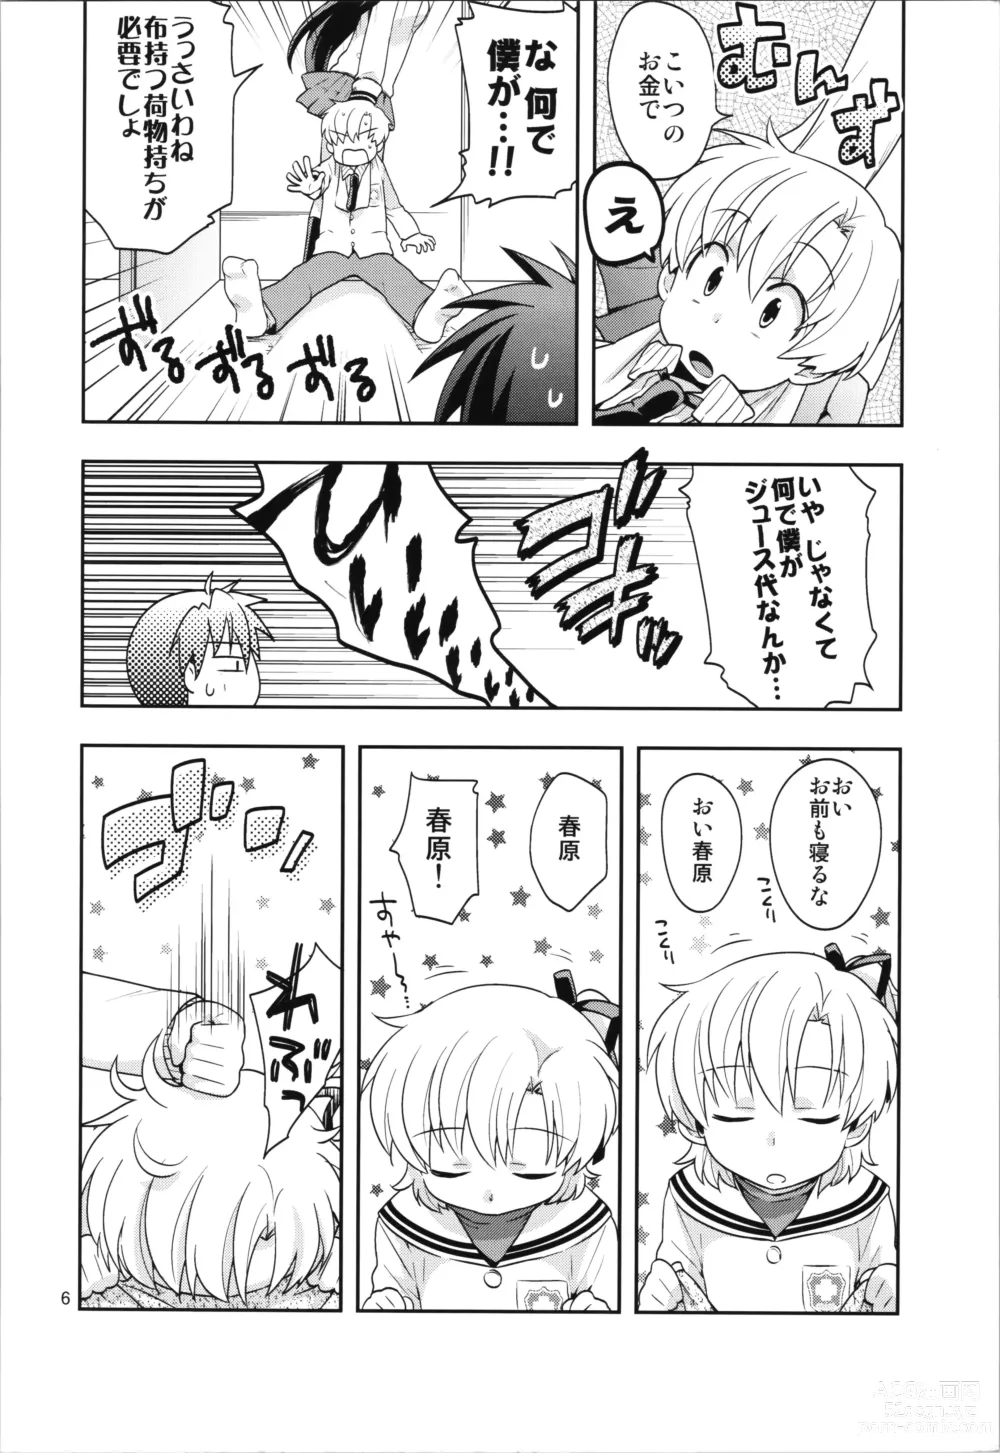 Page 6 of doujinshi Ura Haruhara Mania